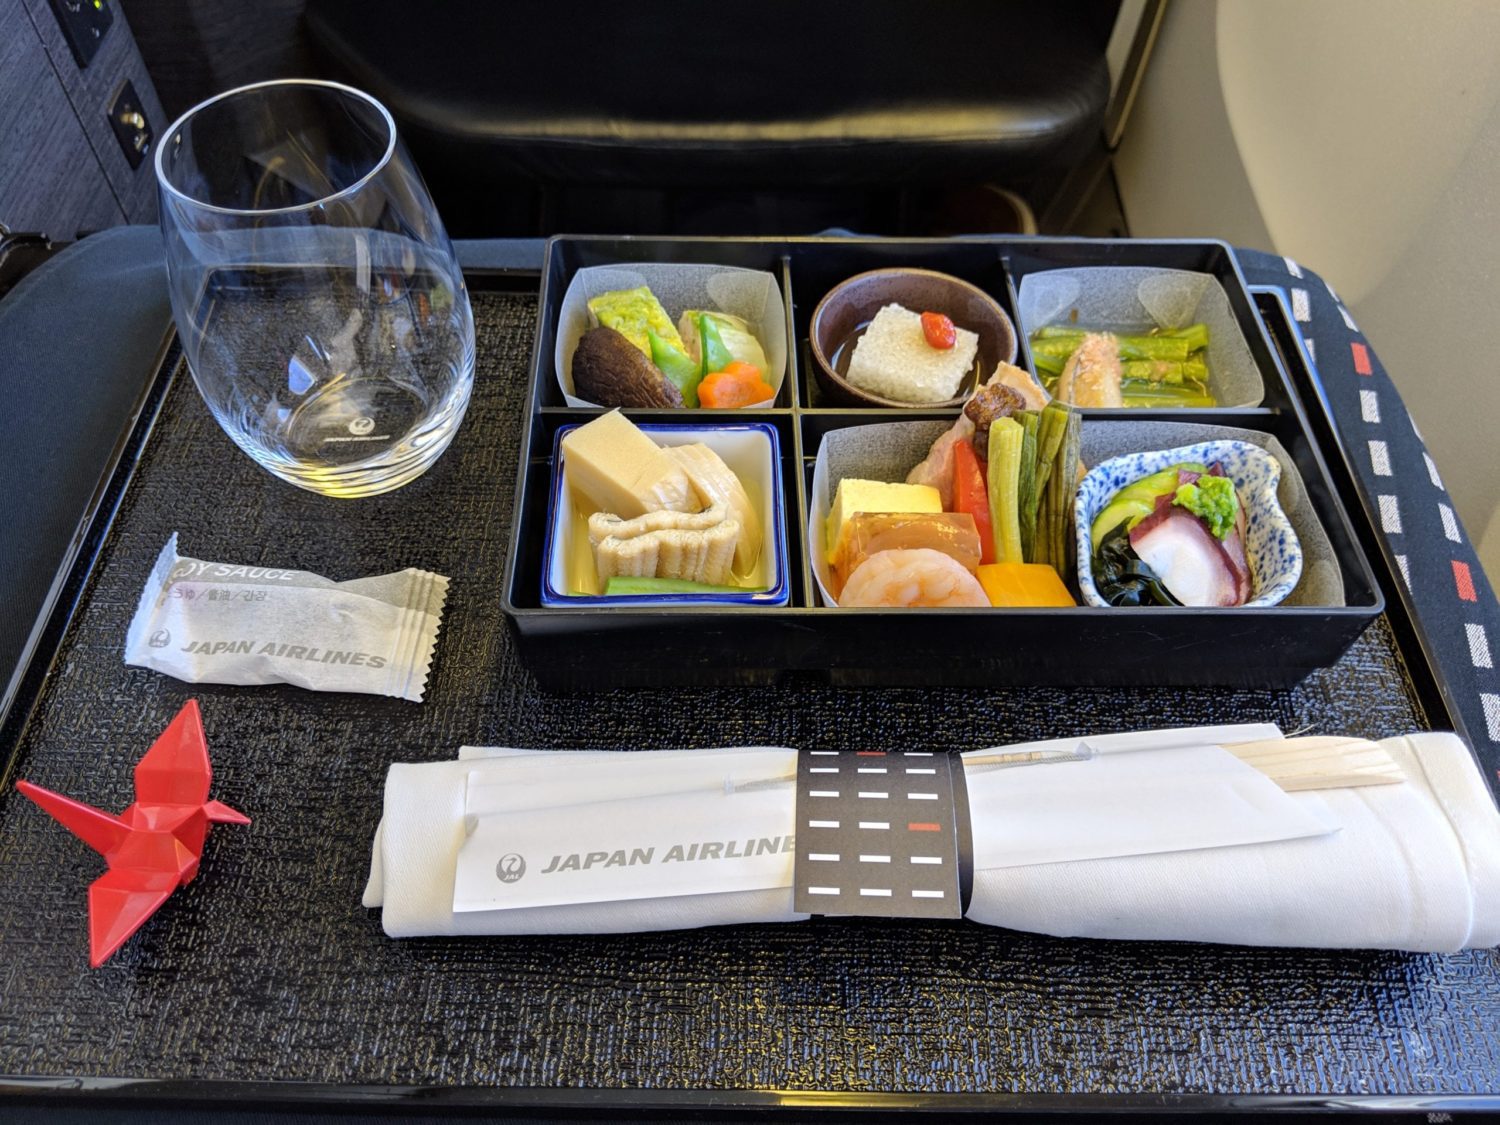 Japan Airlines Food